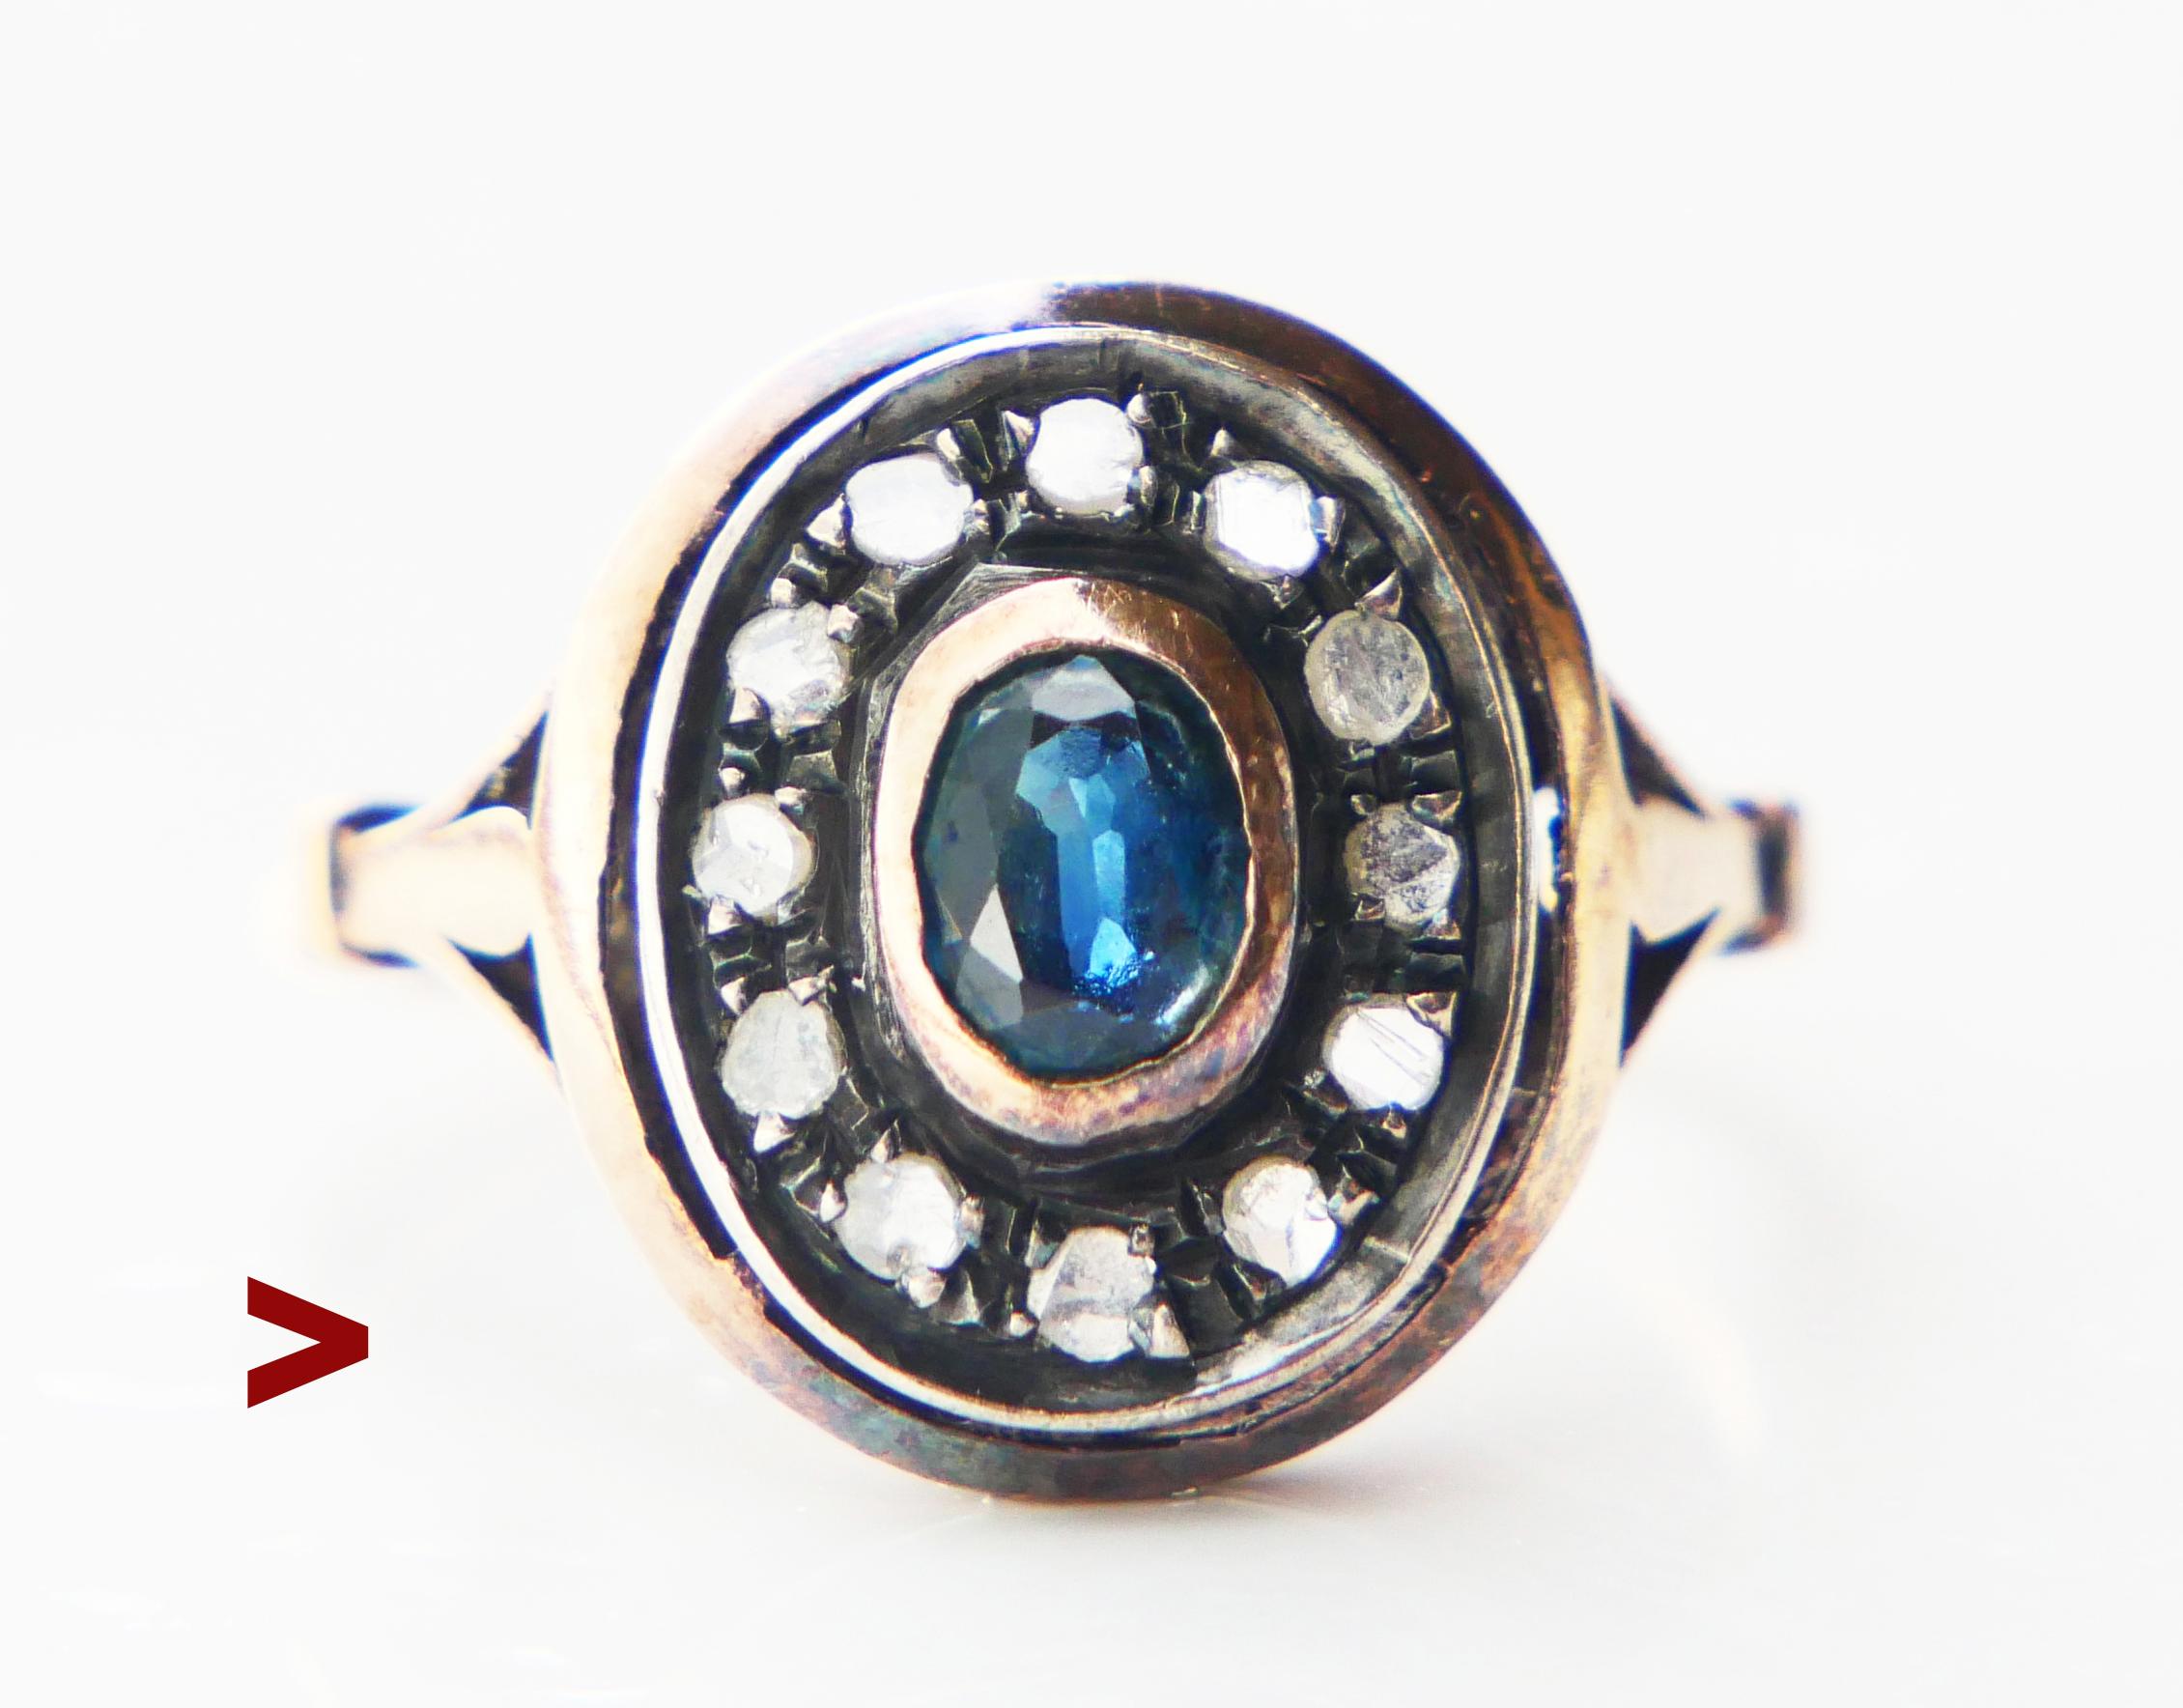 Italienischer Halo-Ring mit natürlichem blau-grünem Saphir und 12 Diamanten im Rosenschliff.

Handgefertigt zwischen den 1920er und 1930er Jahren. Italienische Punzen : 486,500, NA ( Naple s) Metall des Bandes getestet 12K Rose Gold. Die Vorderseite